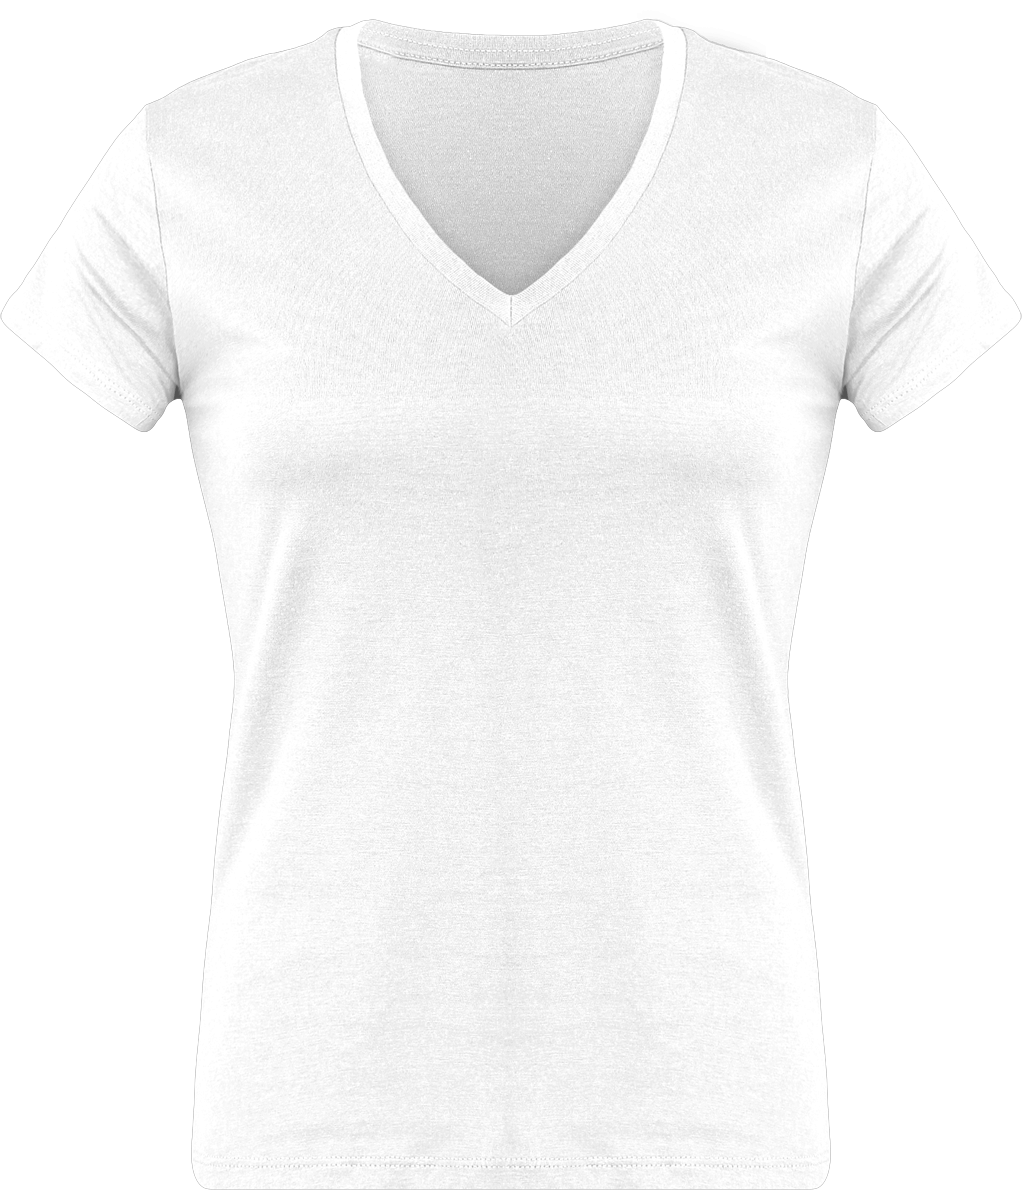 Custom, Feminine And Comfortable Women's T-Shirt With V-Neck White